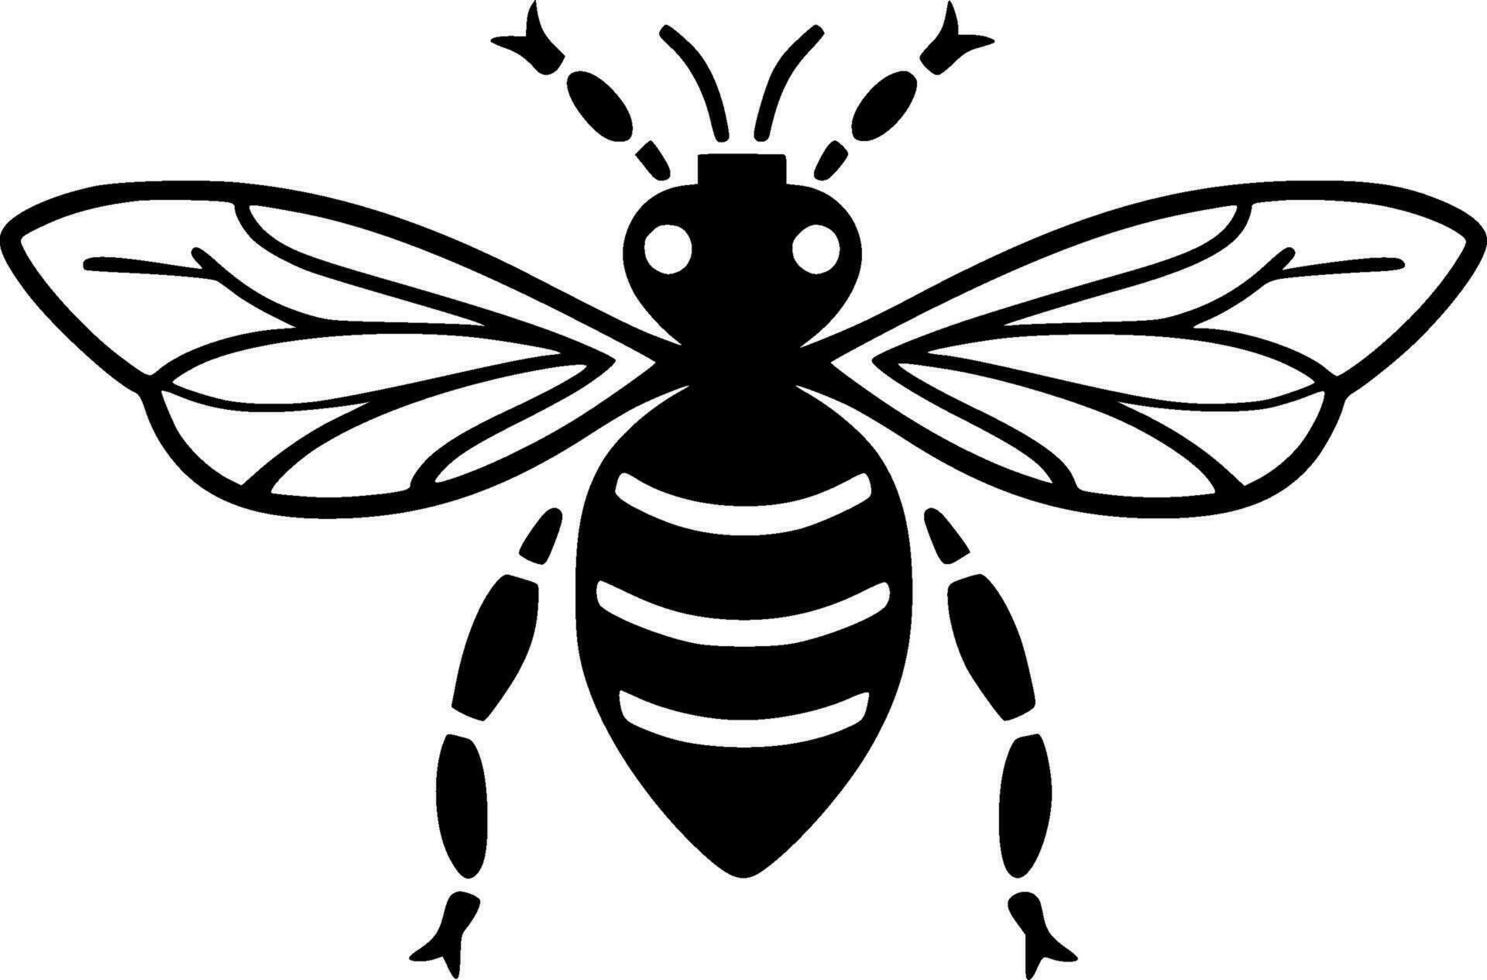 Biene - - hoch Qualität Vektor Logo - - Vektor Illustration Ideal zum T-Shirt Grafik